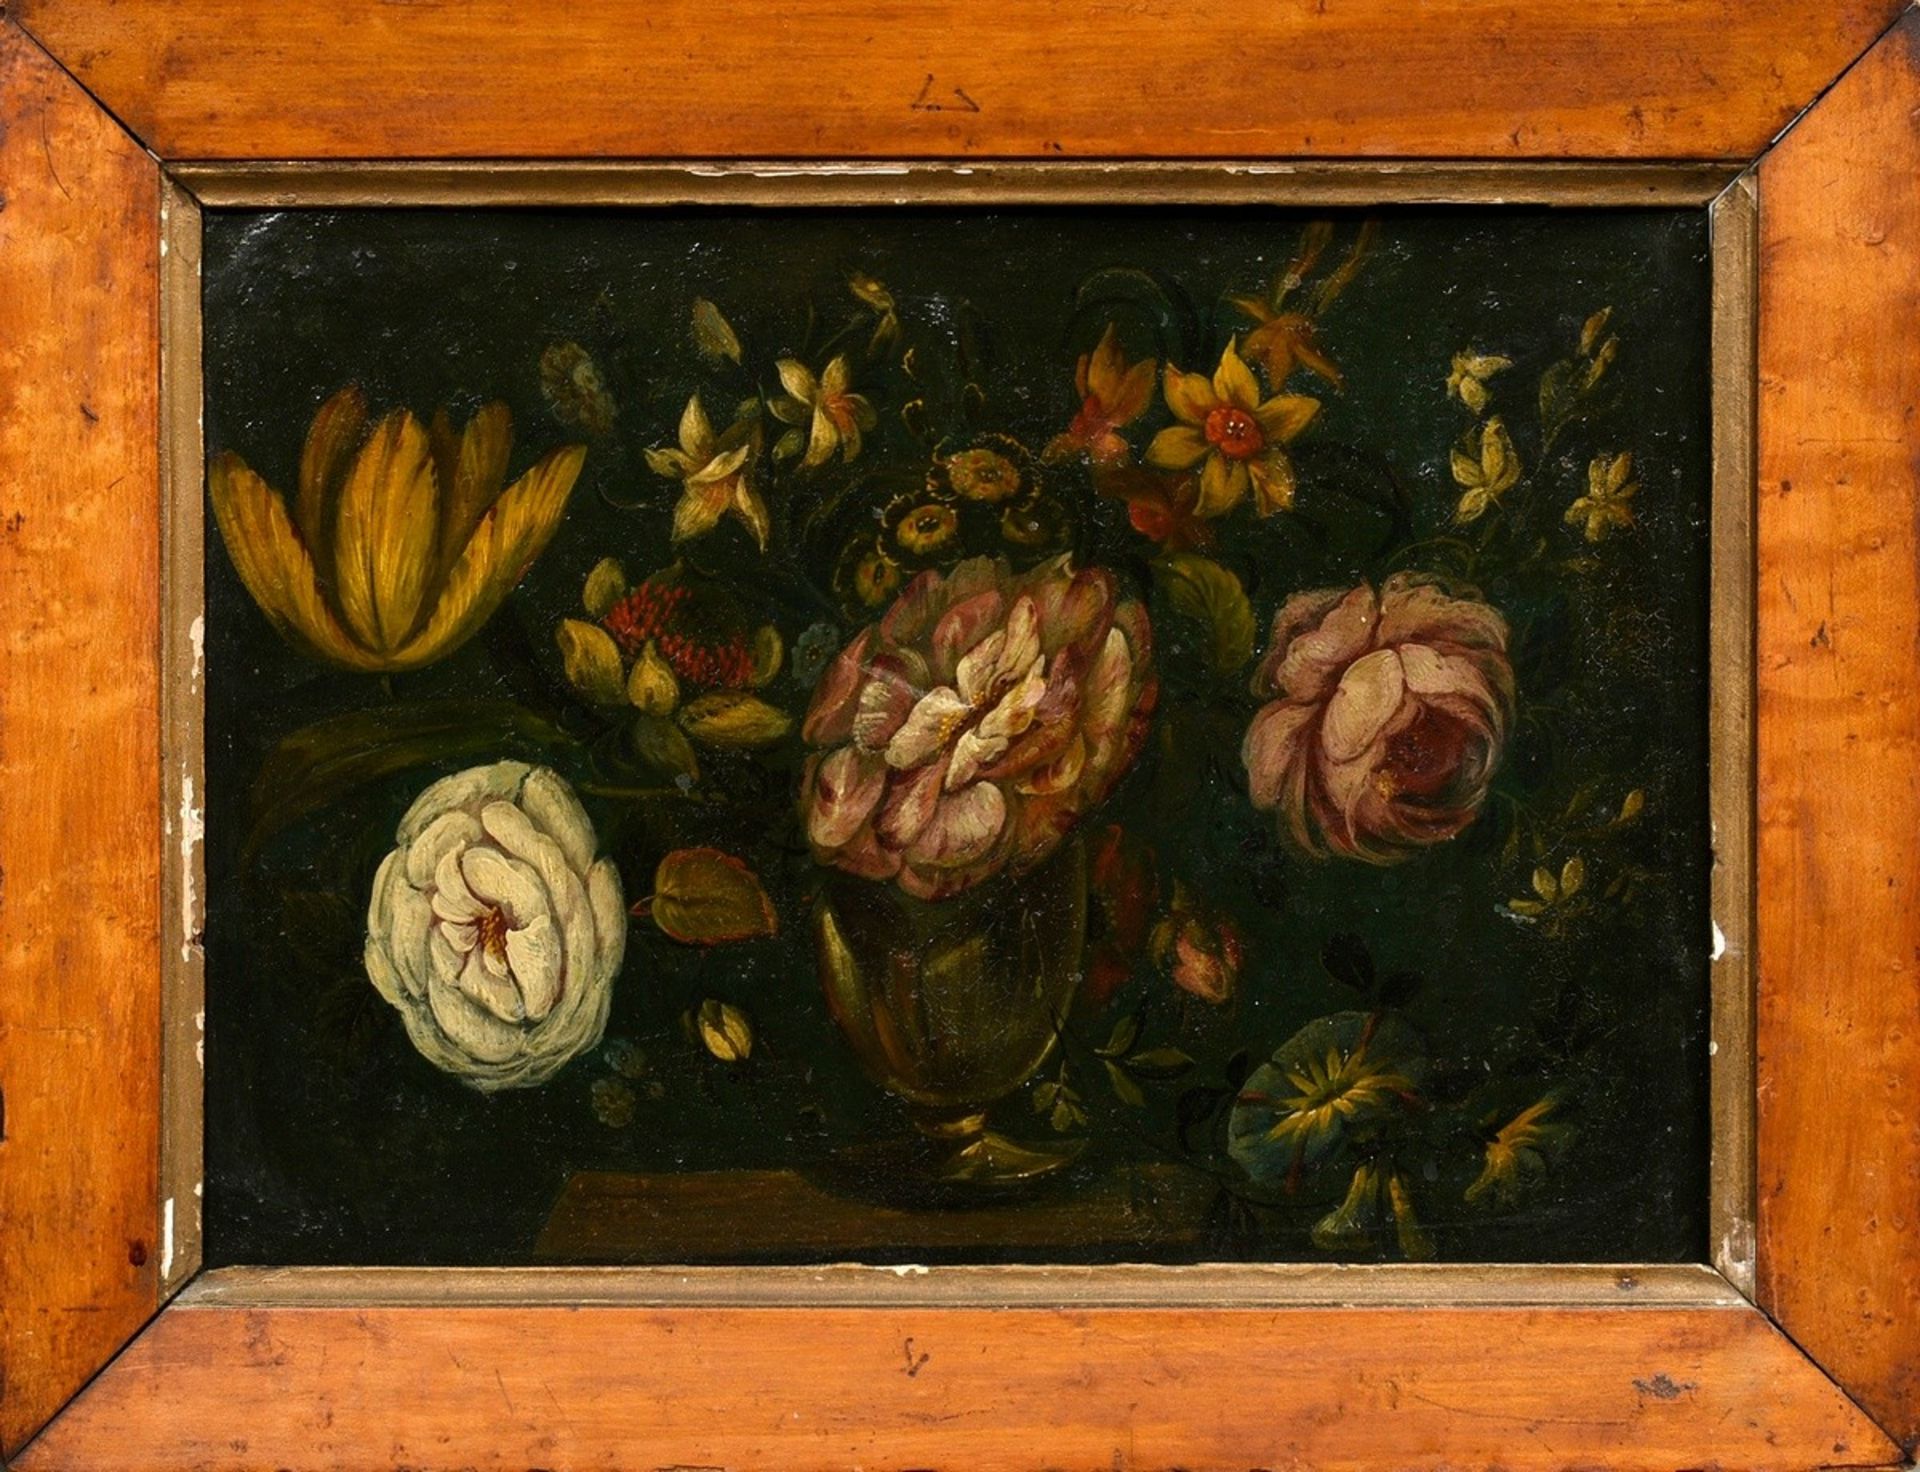 Unbekannter Künstler des 18.Jh. "Blumenstillleben in Vase", Öl/Metall, 25,5x35,8cm (m.R. 33,5x44cm) - Bild 2 aus 3